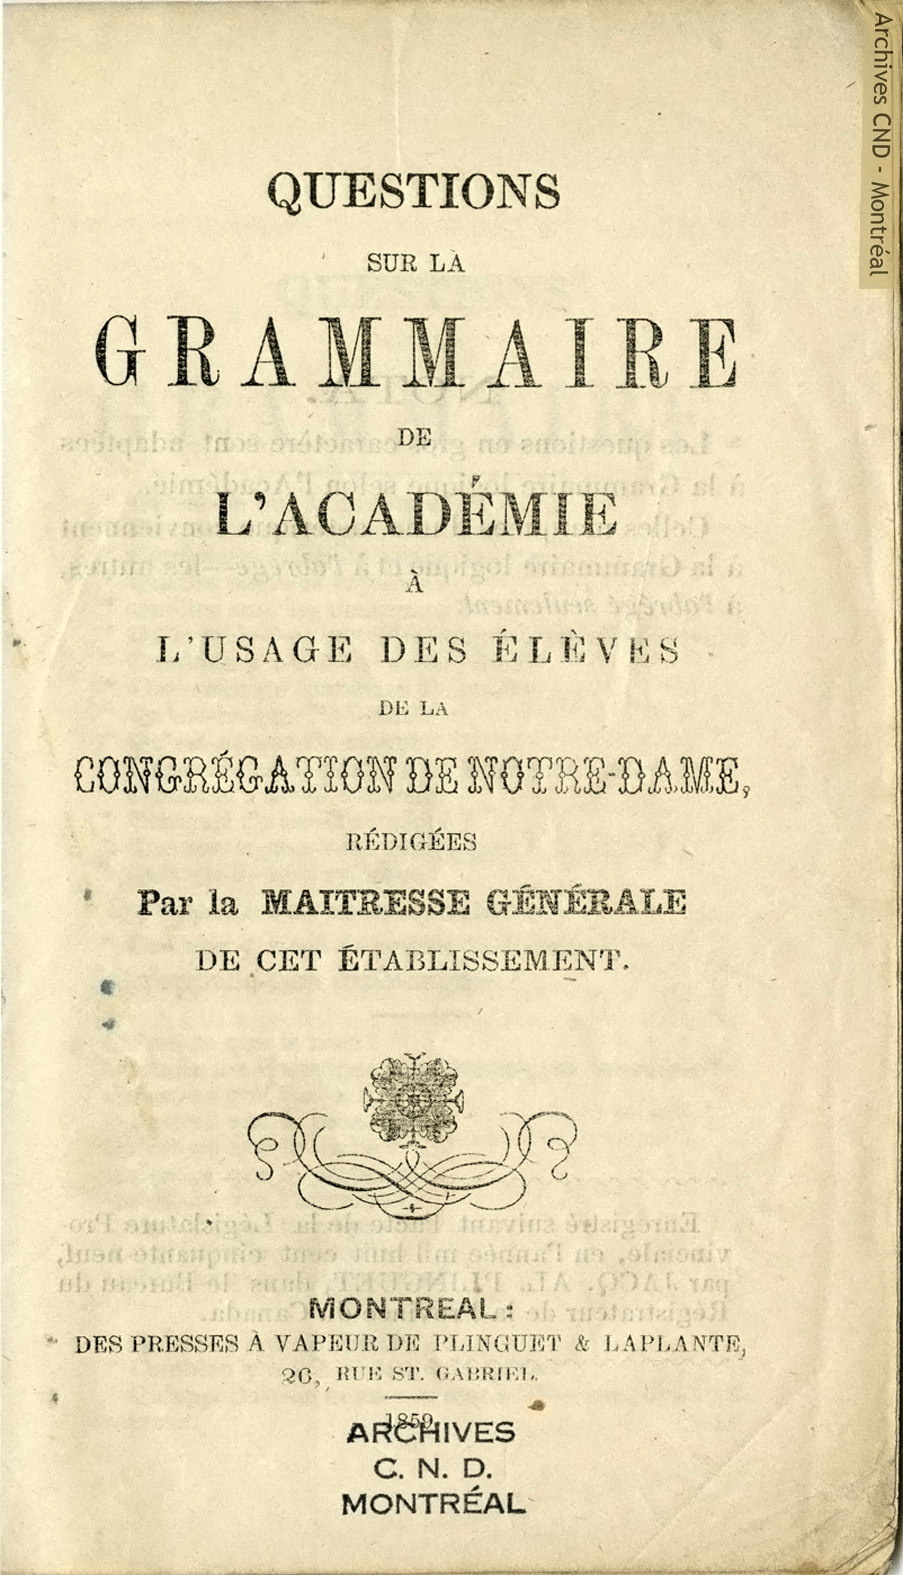 Questions sur la grammaire à l'Académie à l'usage des élèves de la Congrégation de Notre-Dame - página título